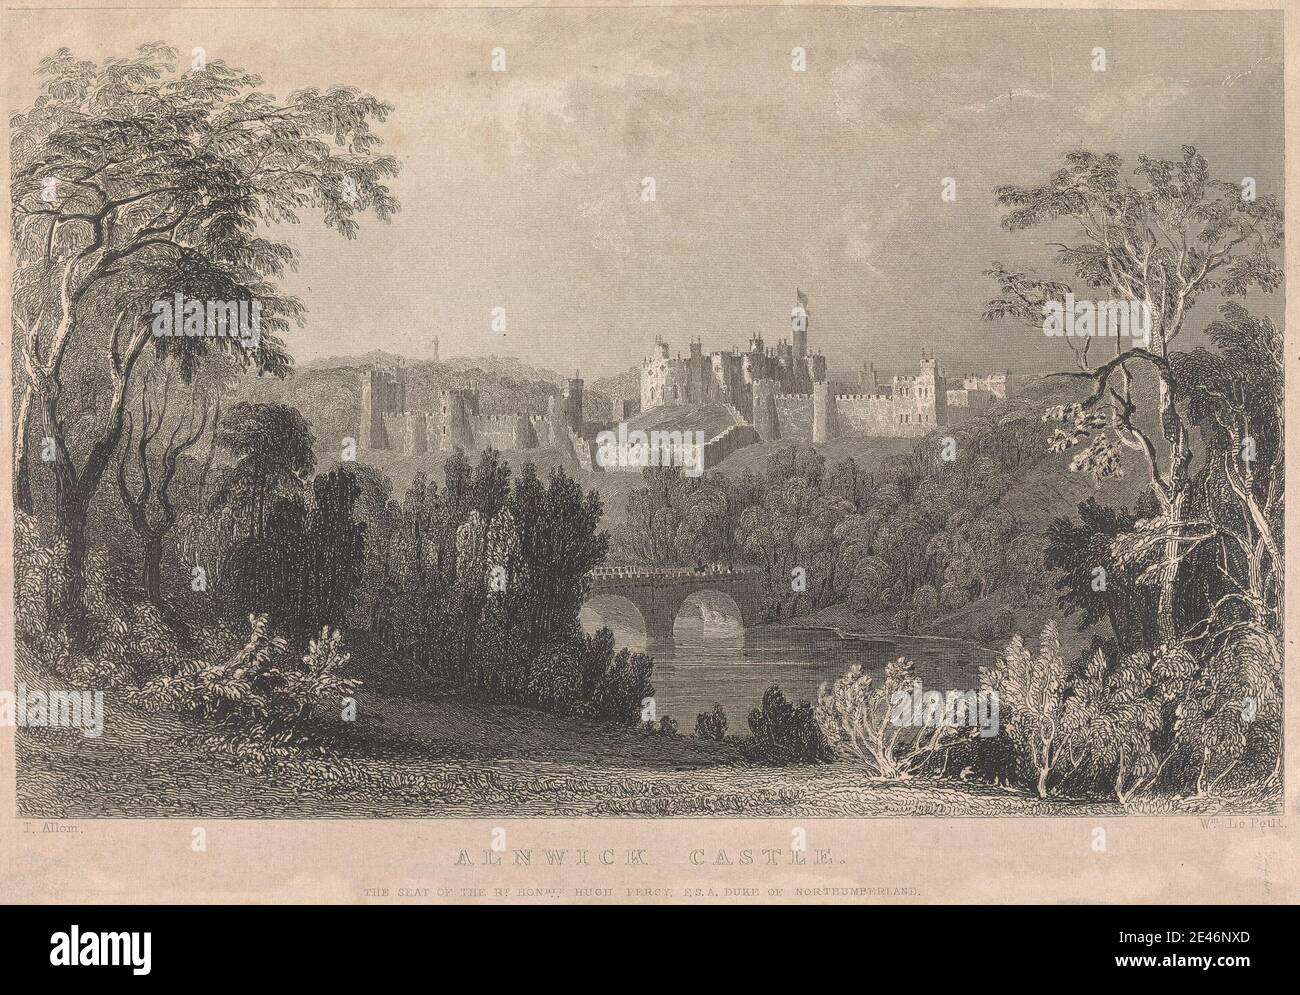 William Le Petit, Anfang des 19. Jahrhunderts, Alnwick Castle der Sitz des rechten Honorable Hugh Percy; Seite 8 (Band 1). Gravur. Public Domain Stockfoto